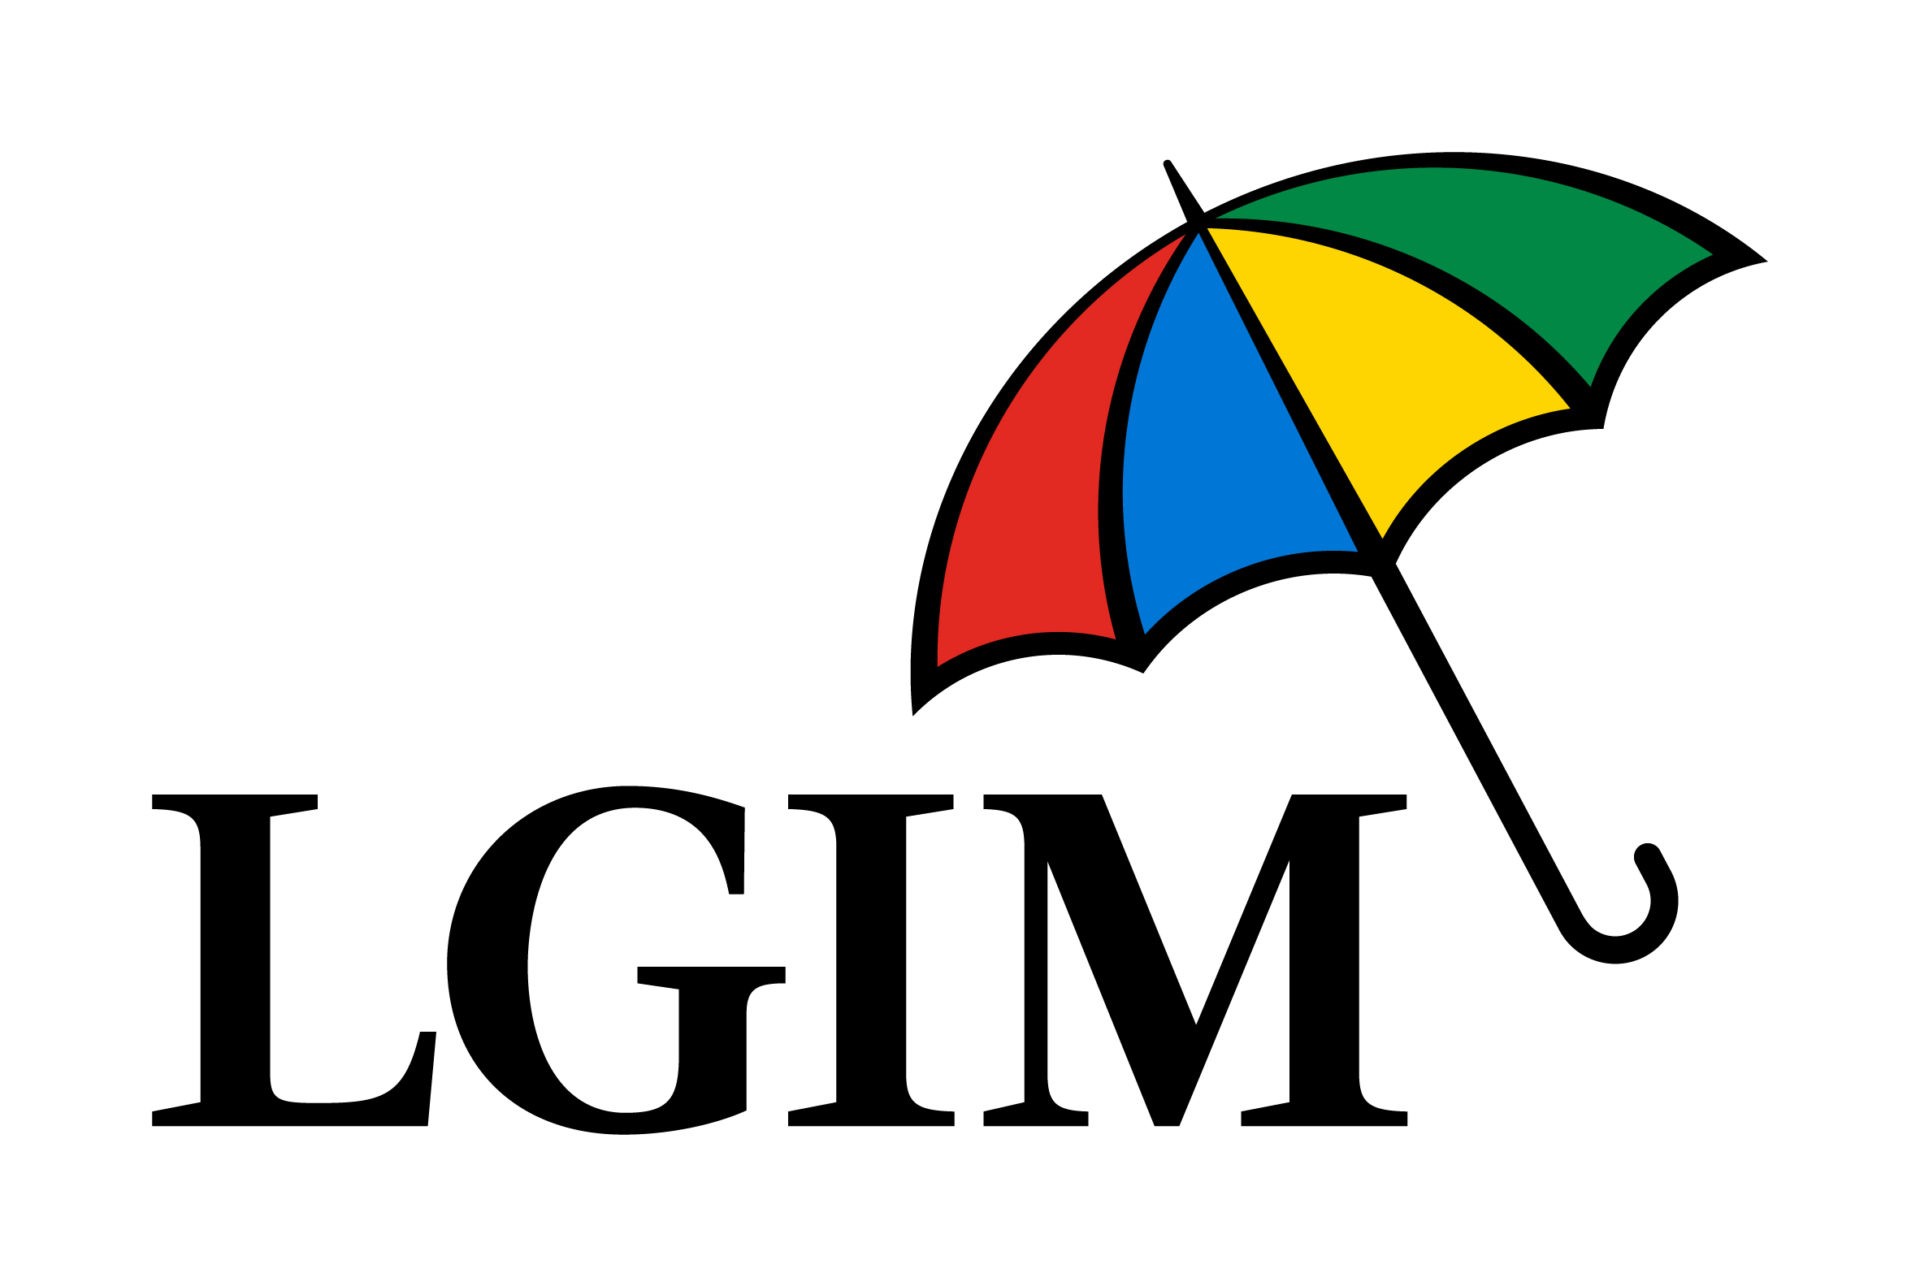 Legal & General Investment Management (LGIM), en av världens största kapitalförvaltare, och svenska premiepensionsbolaget AP7, som representerar fem miljoner svenska pensionssparare, bekräftar sitt samarbete för att etablera en innovativ klimatomställningsstrategi.